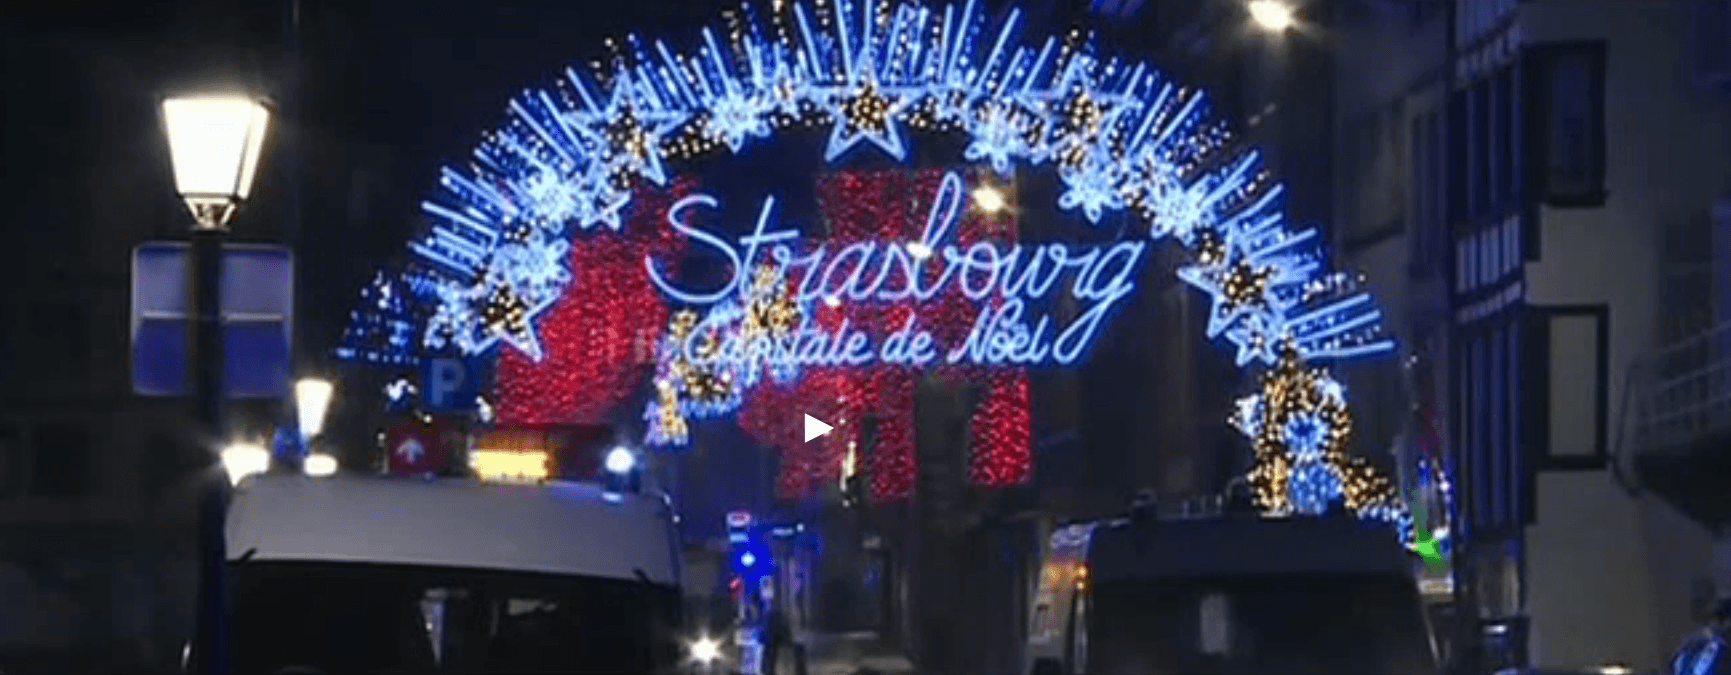 Attentato terroristico a Strasburgo: Orrore e sdegno, situazione ancora confusa